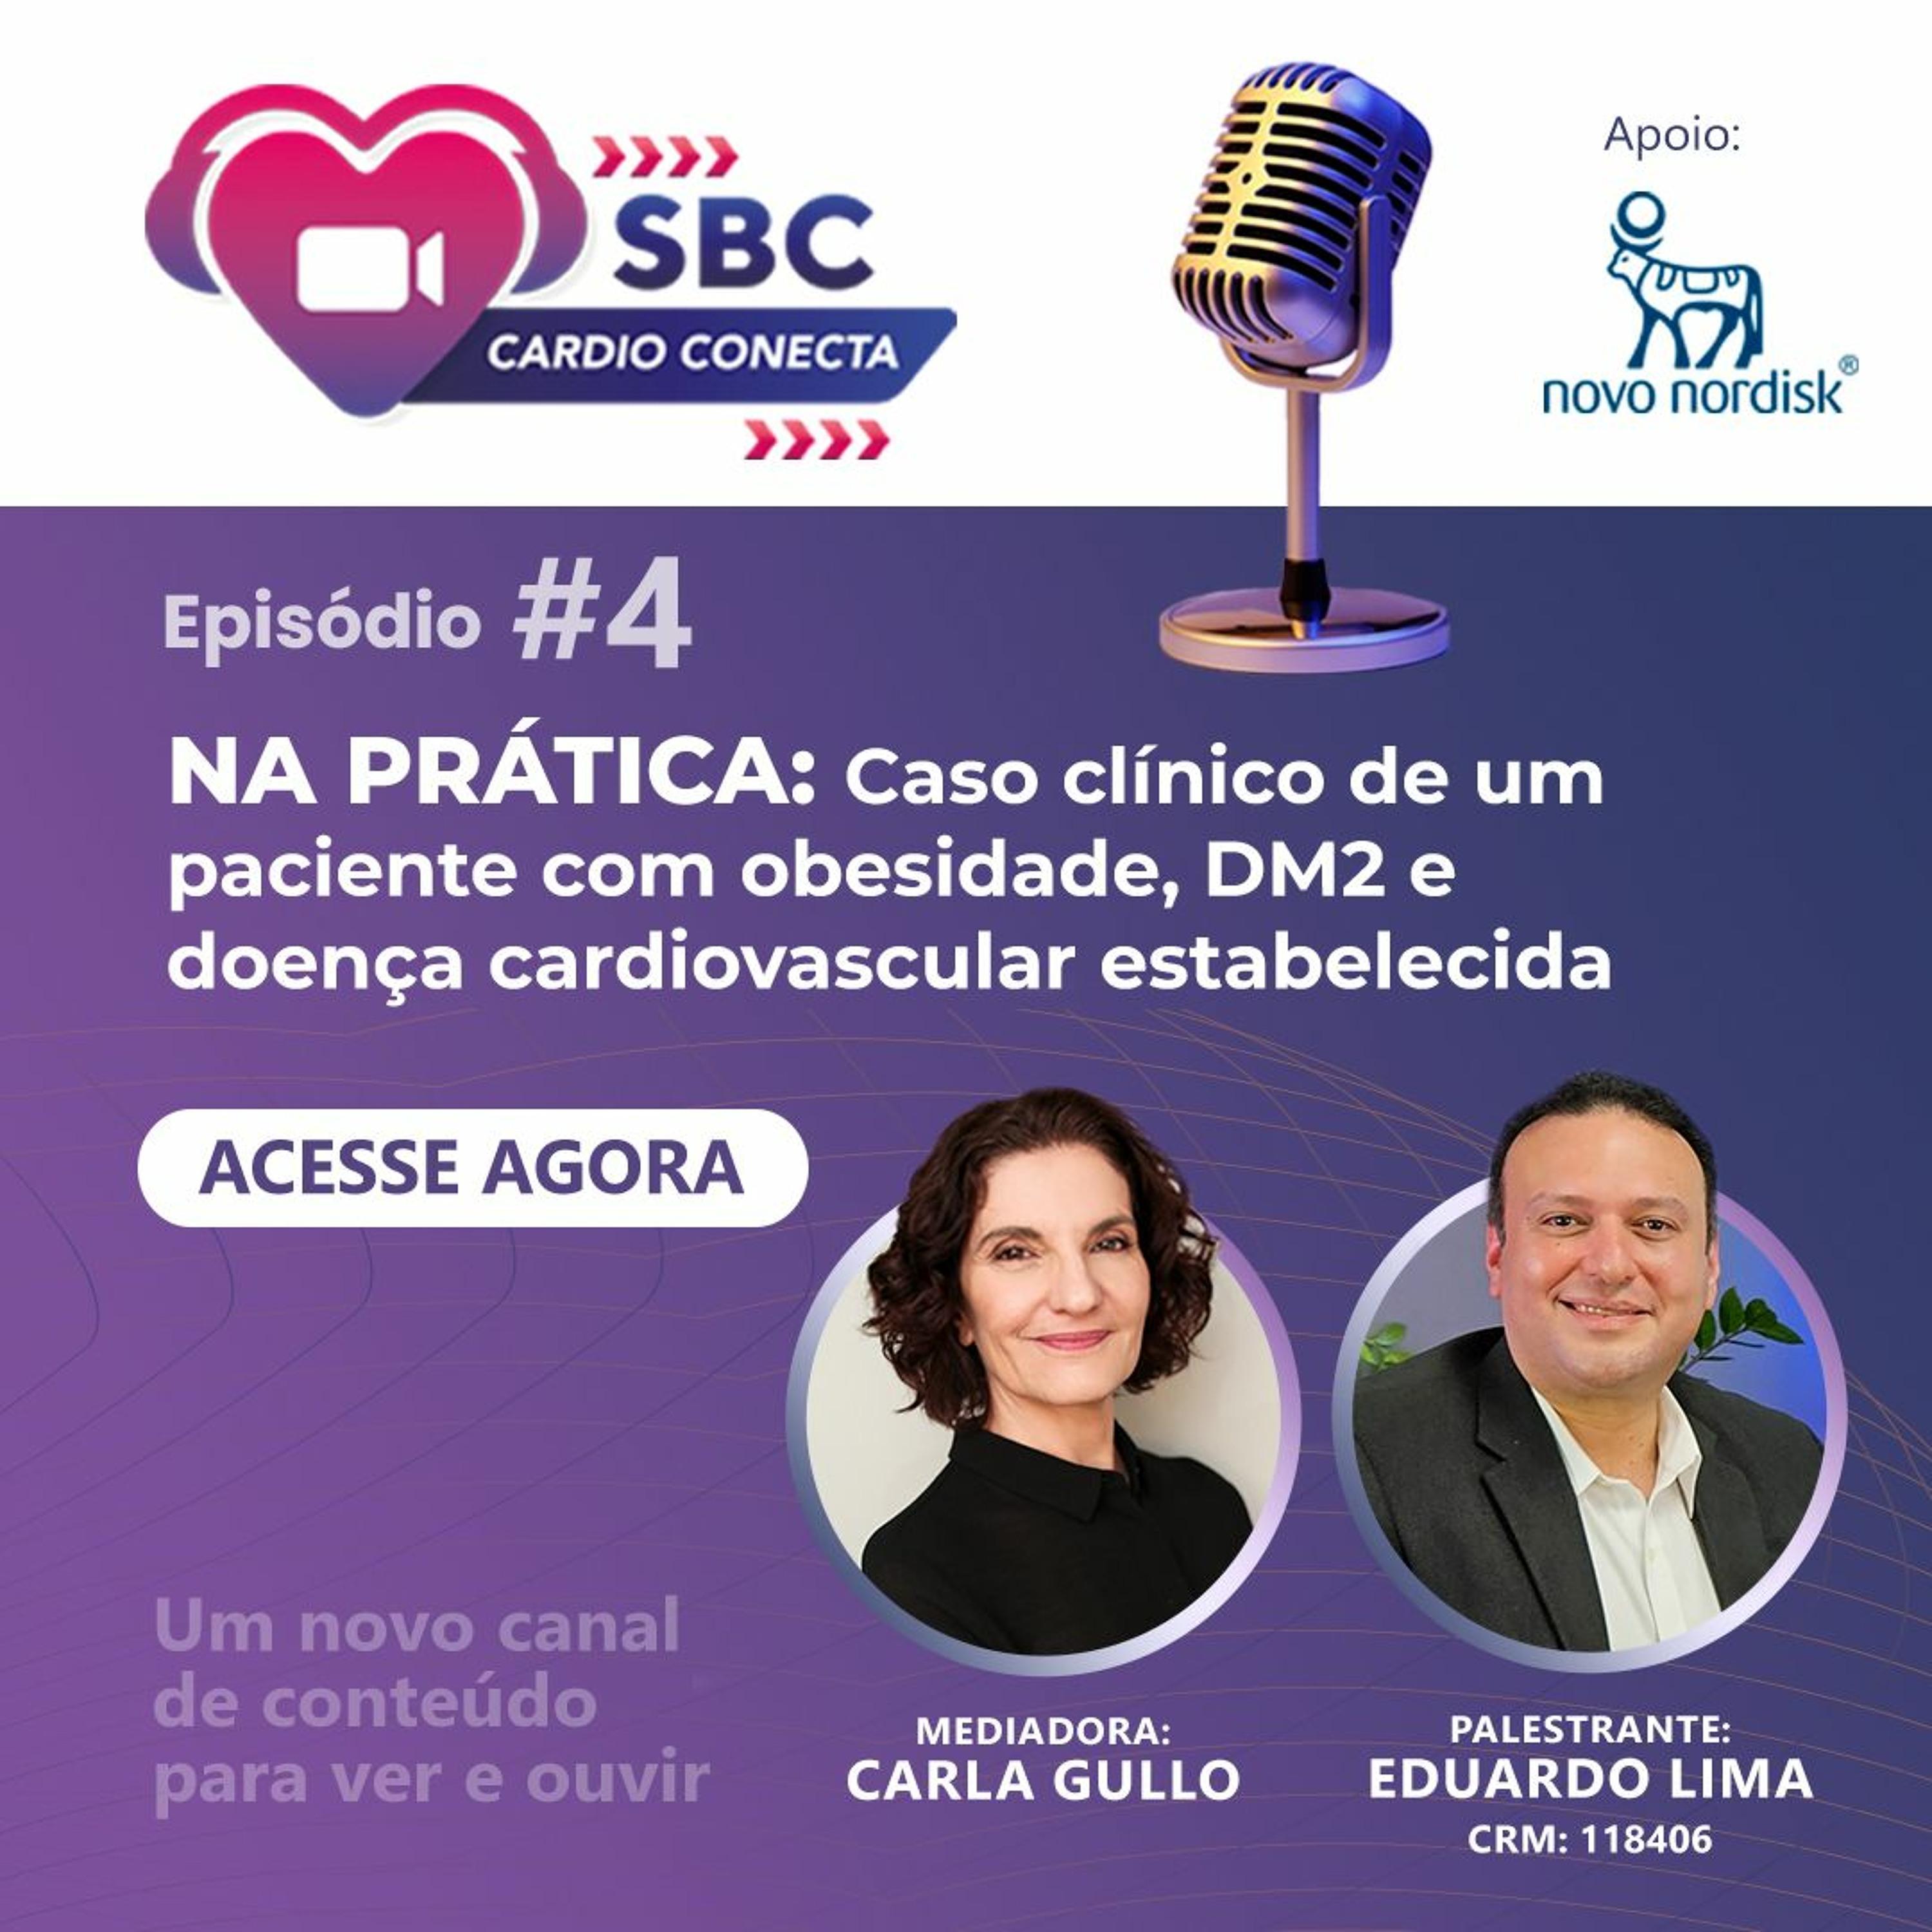 Confira a conversa entre o Dr. Eduardo Lima e Carla Gullo sobre<br />o caso clínico de um paciente com obesidade, DM2 e doença<br />cardiovascular neste videocast imperdível.